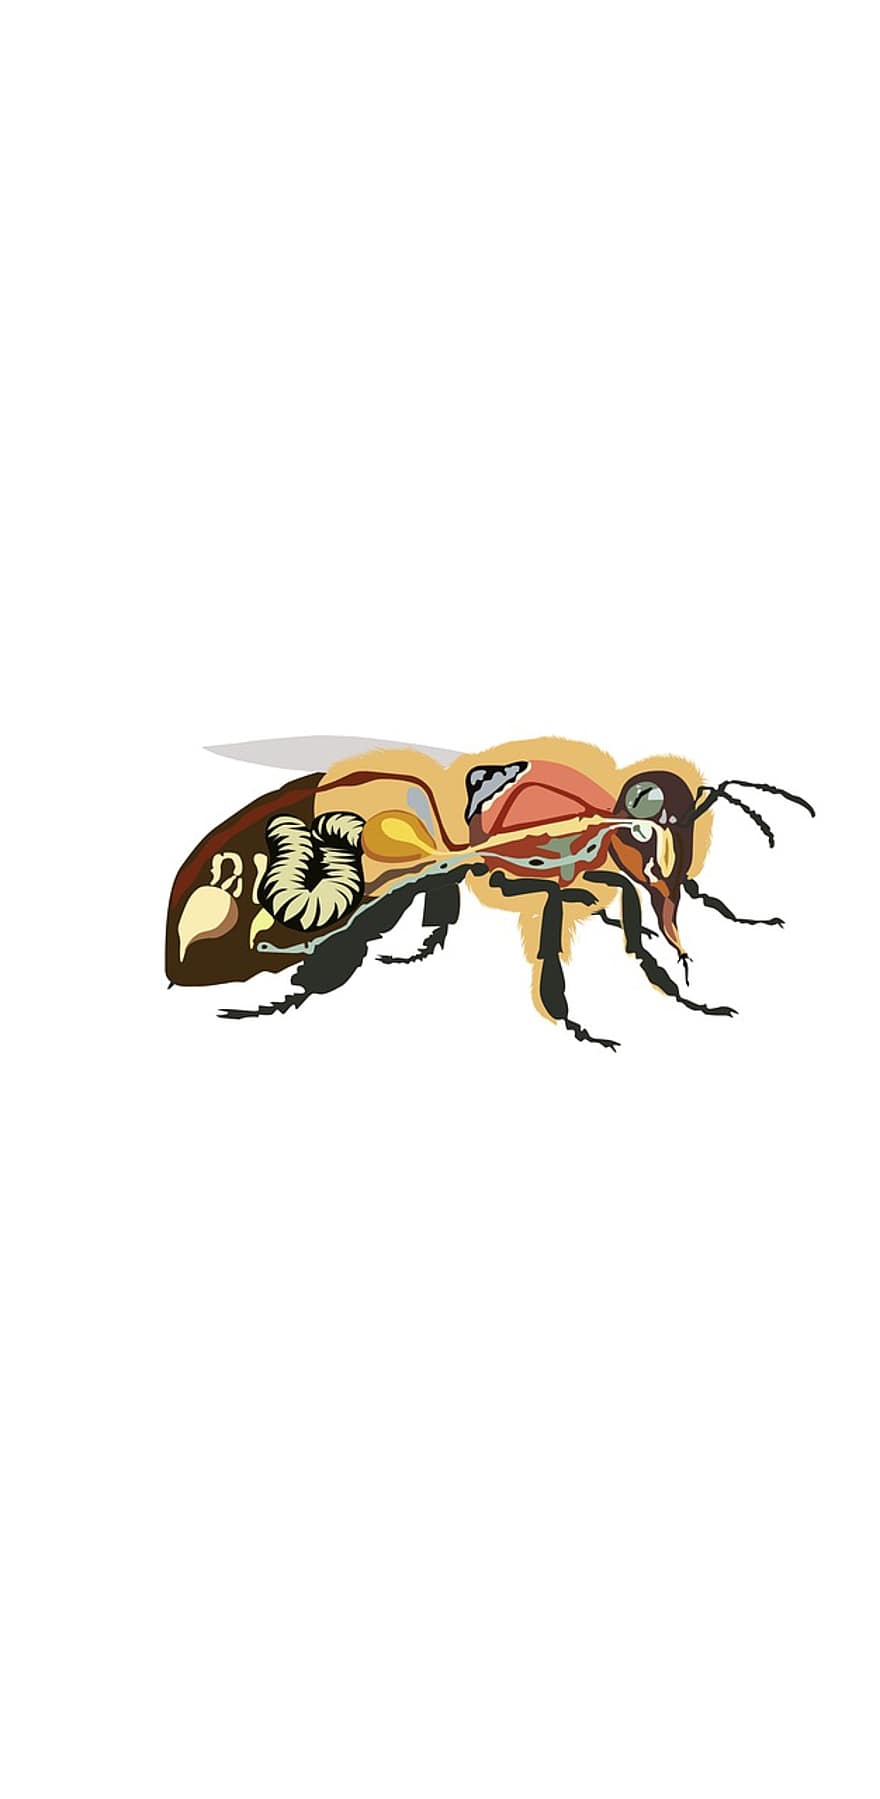 анатомия пчелы, пчела, насекомое, мед, пчелиный мед, анатомия, Рисование, иллюстрация, муравей, оса, вектор